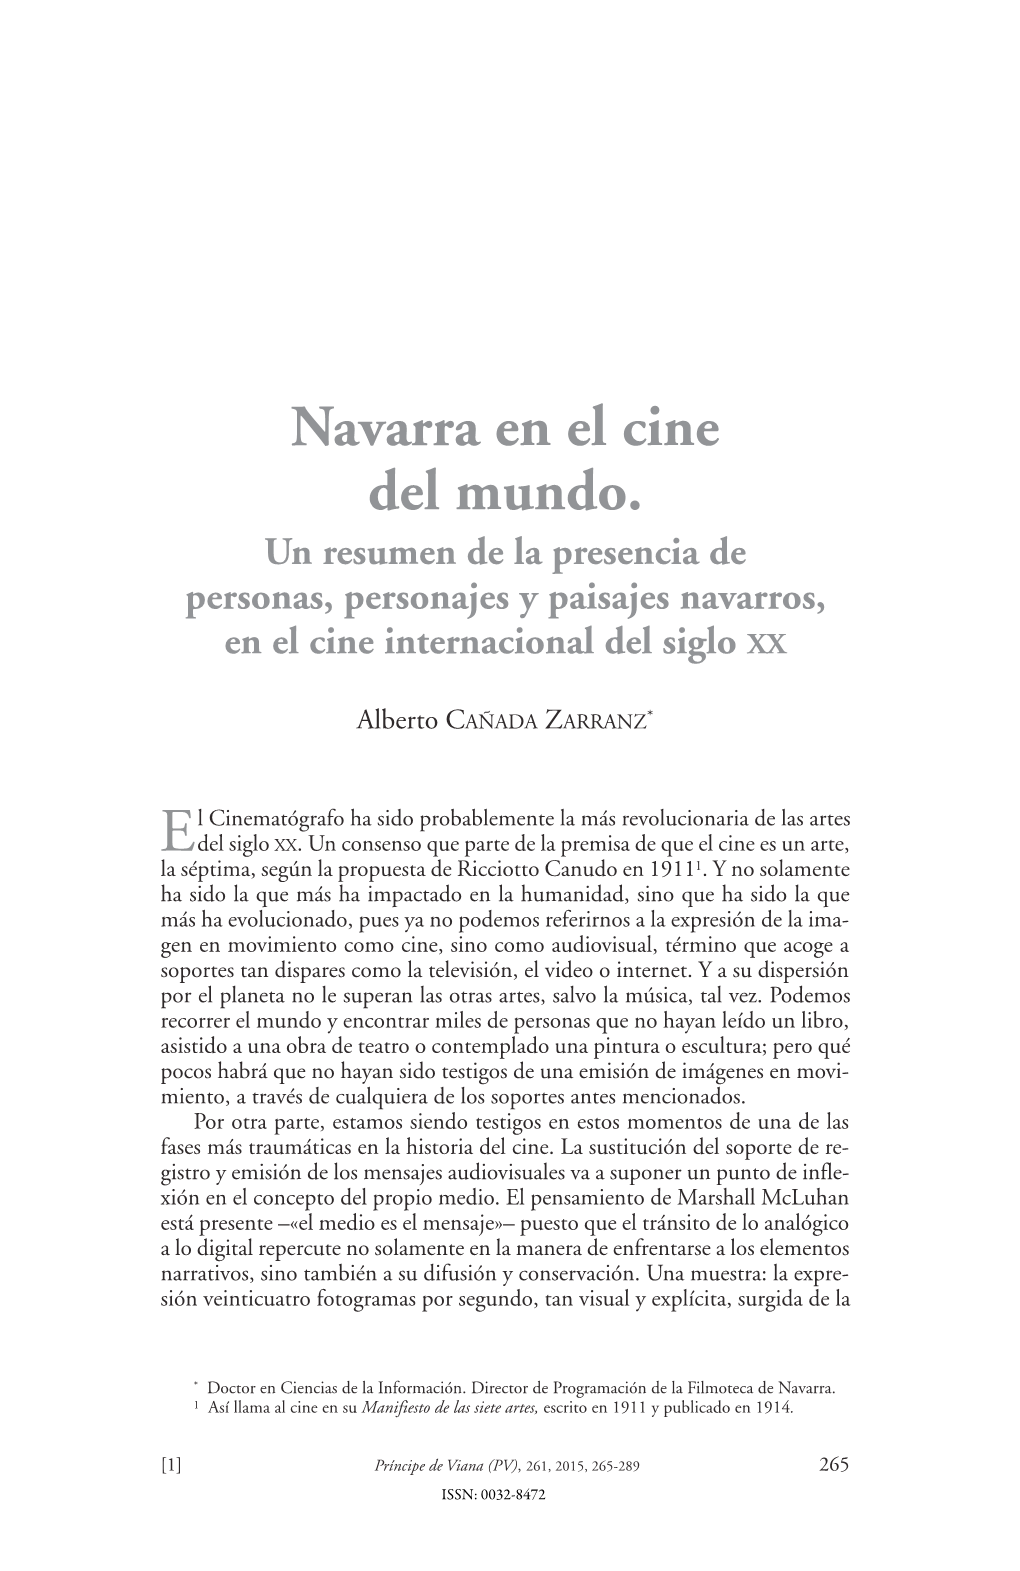 Navarra En El Cine Del Mundo. Un Resumen De La Presencia De Personas, Personajes Y Paisajes Navarros, En El Cine Internacional Del Siglo XX